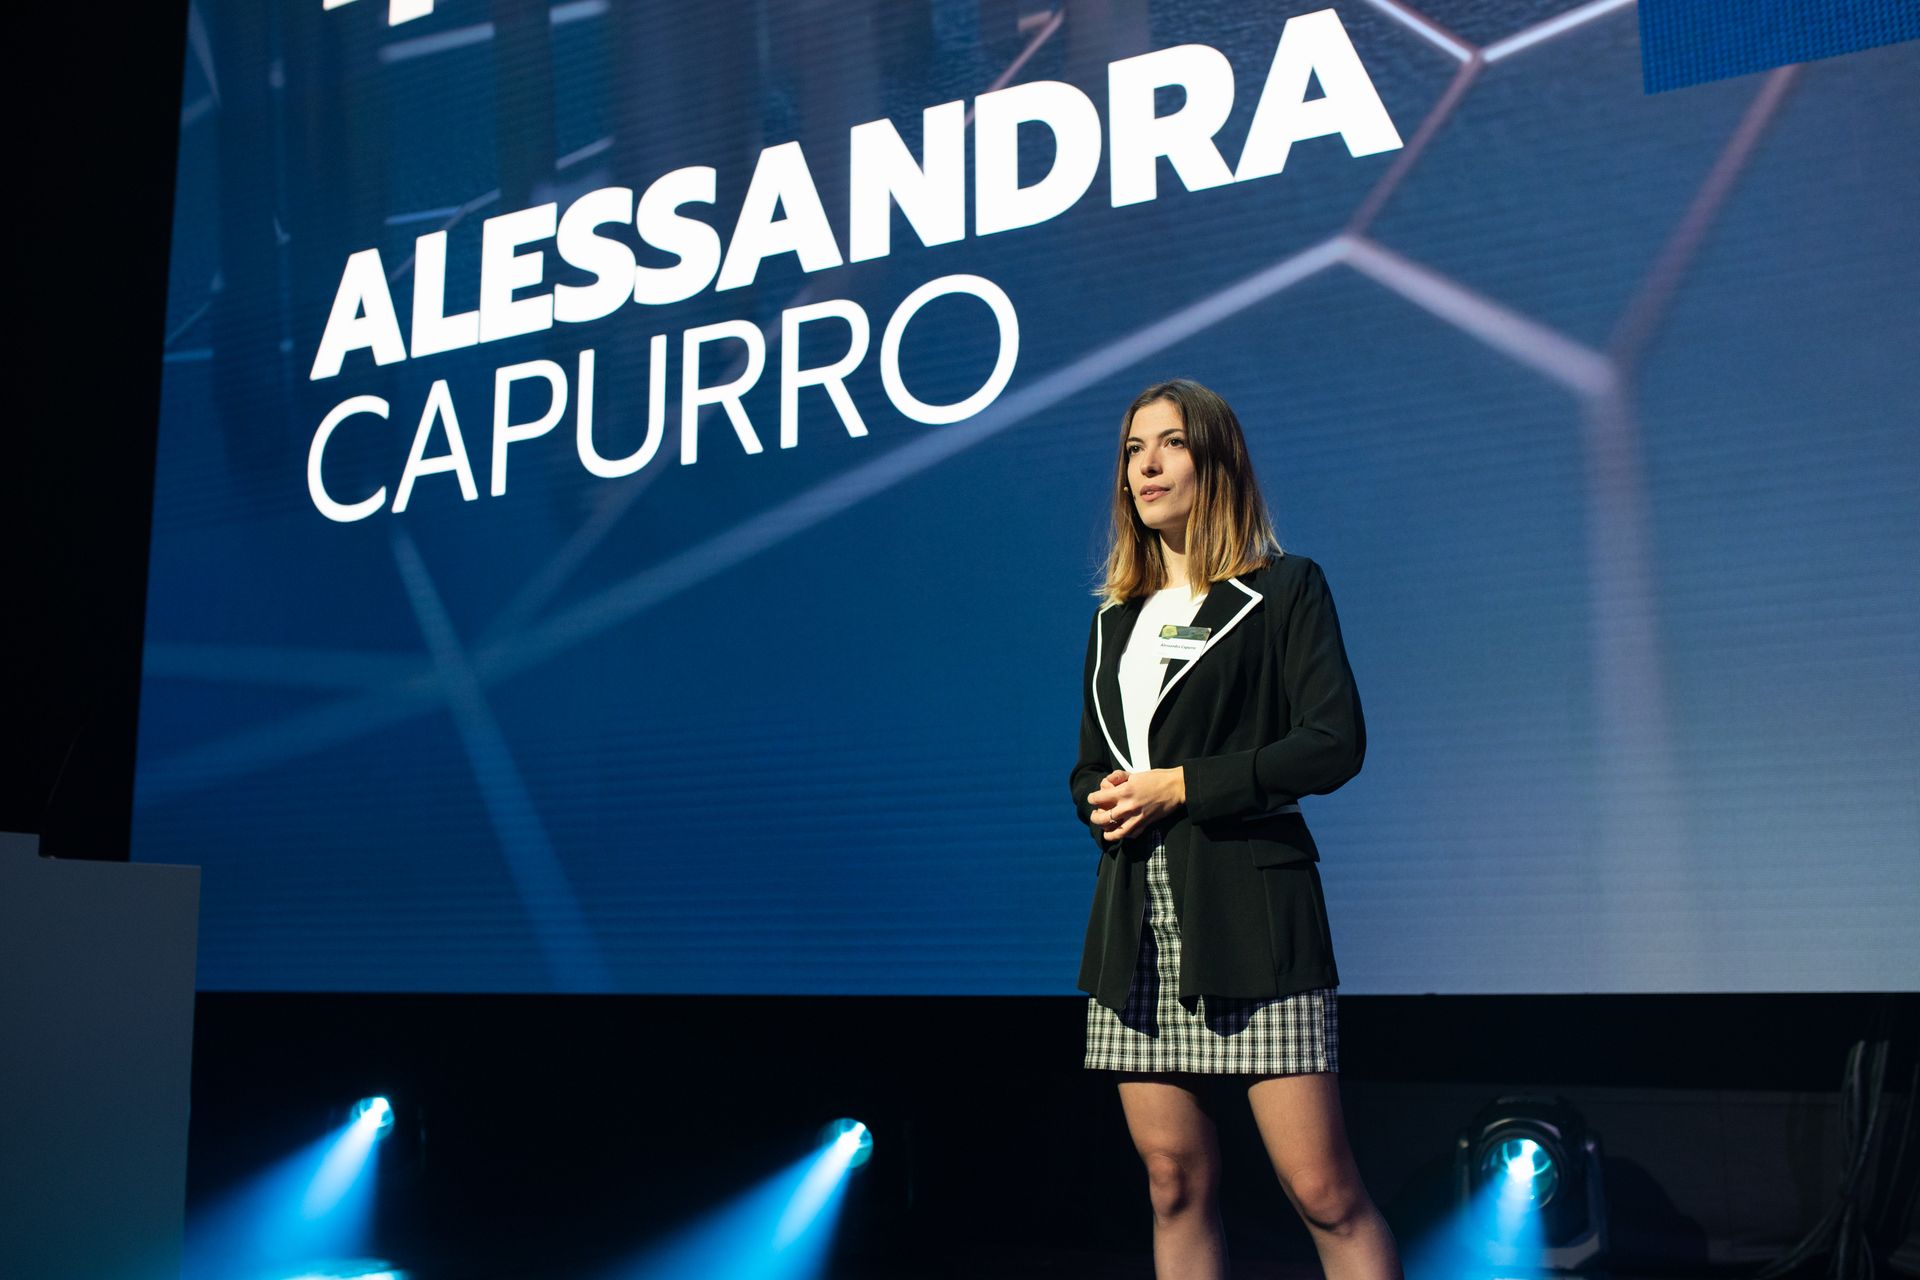 Alessandra Capurro, ganadora de la clasificación "Nextgen Hero", en la ceremonia de entrega del "Digital Economy Award" de Suiza